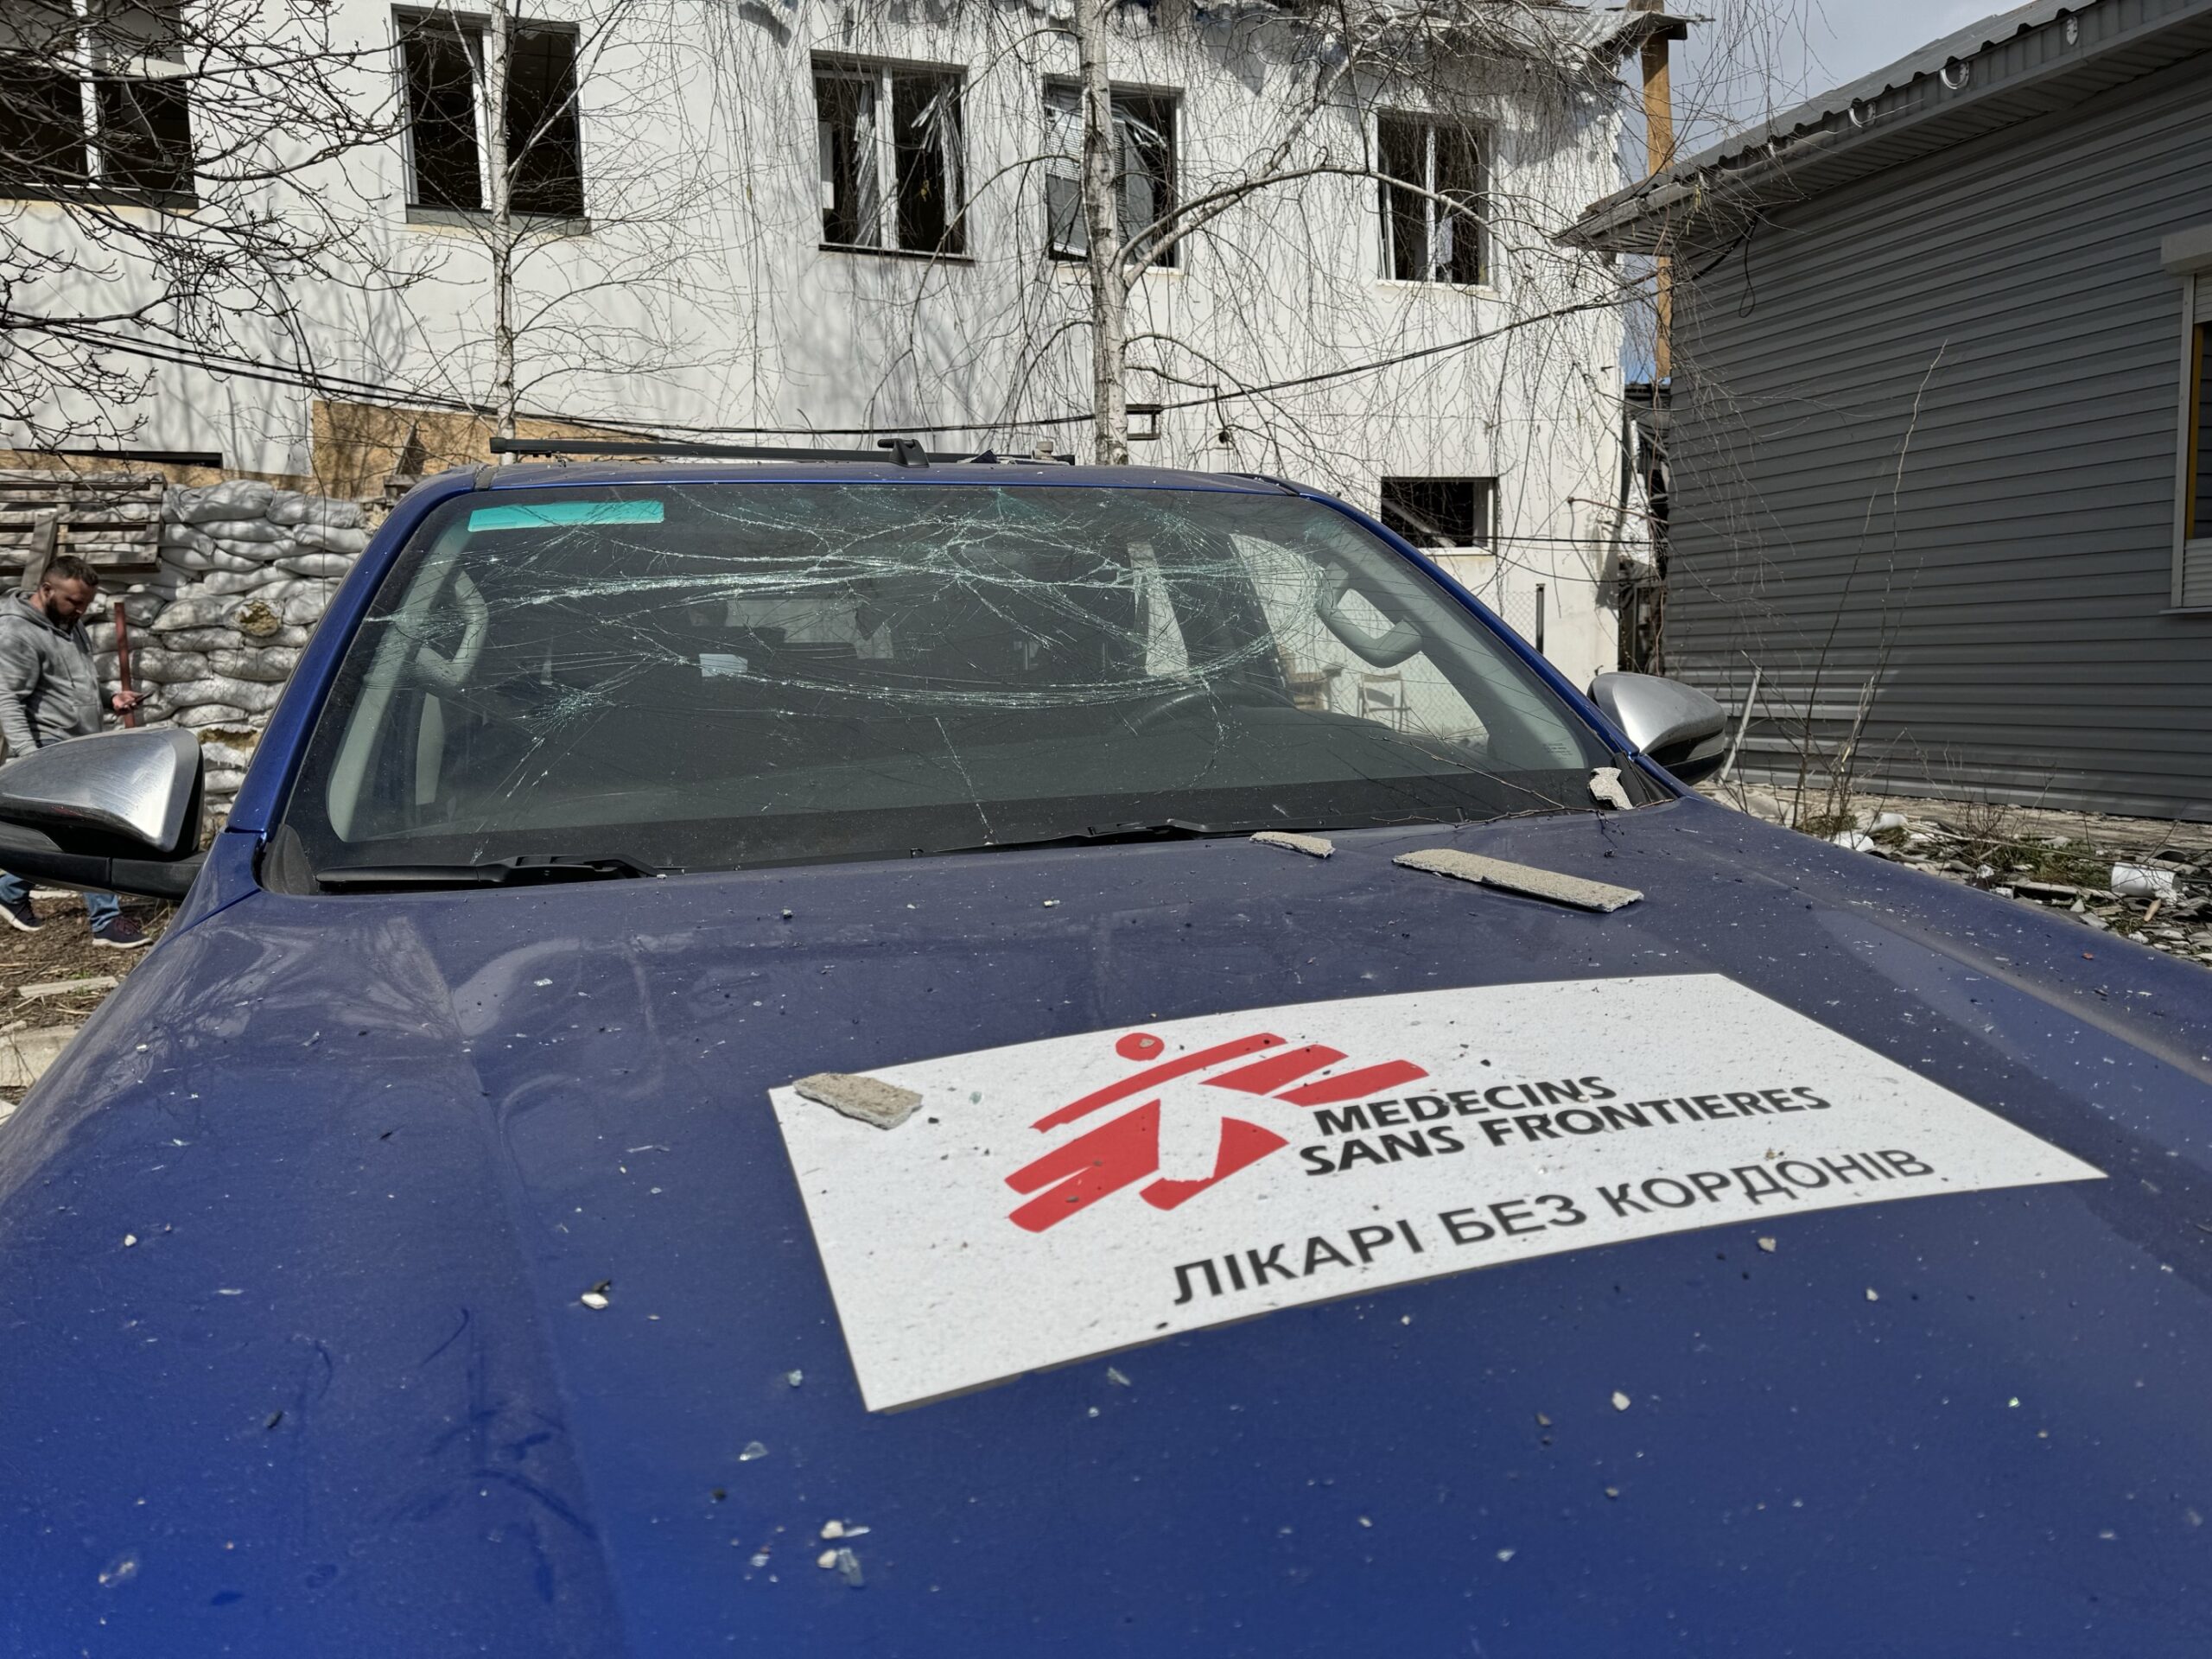 "Лікарі без кордонів" призупиняють діяльність на Донеччині через атаку на офіс у Покровську і поранення охоронця організації (фото)